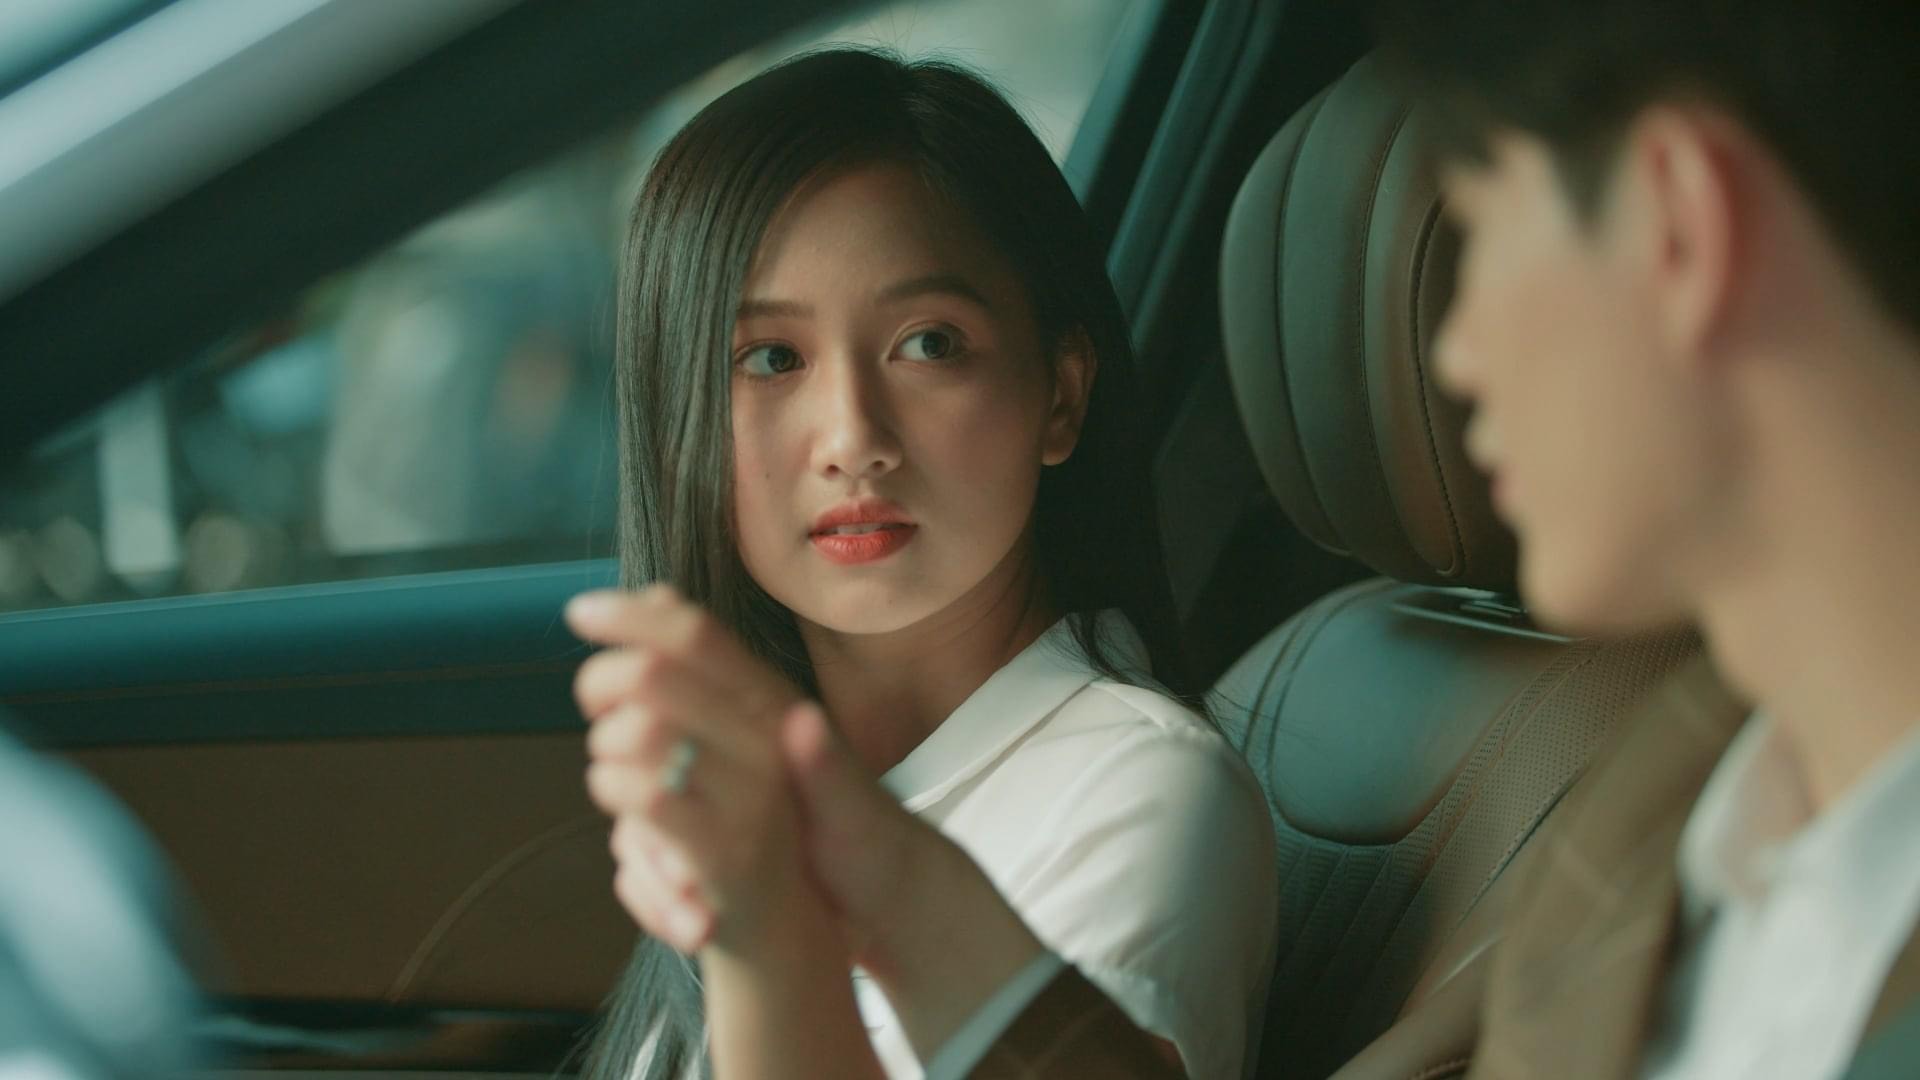 Bật mí về cô gái ngọt ngào trong MV Sai cách yêu đang 'làm mưa làm gió' trên Youtube